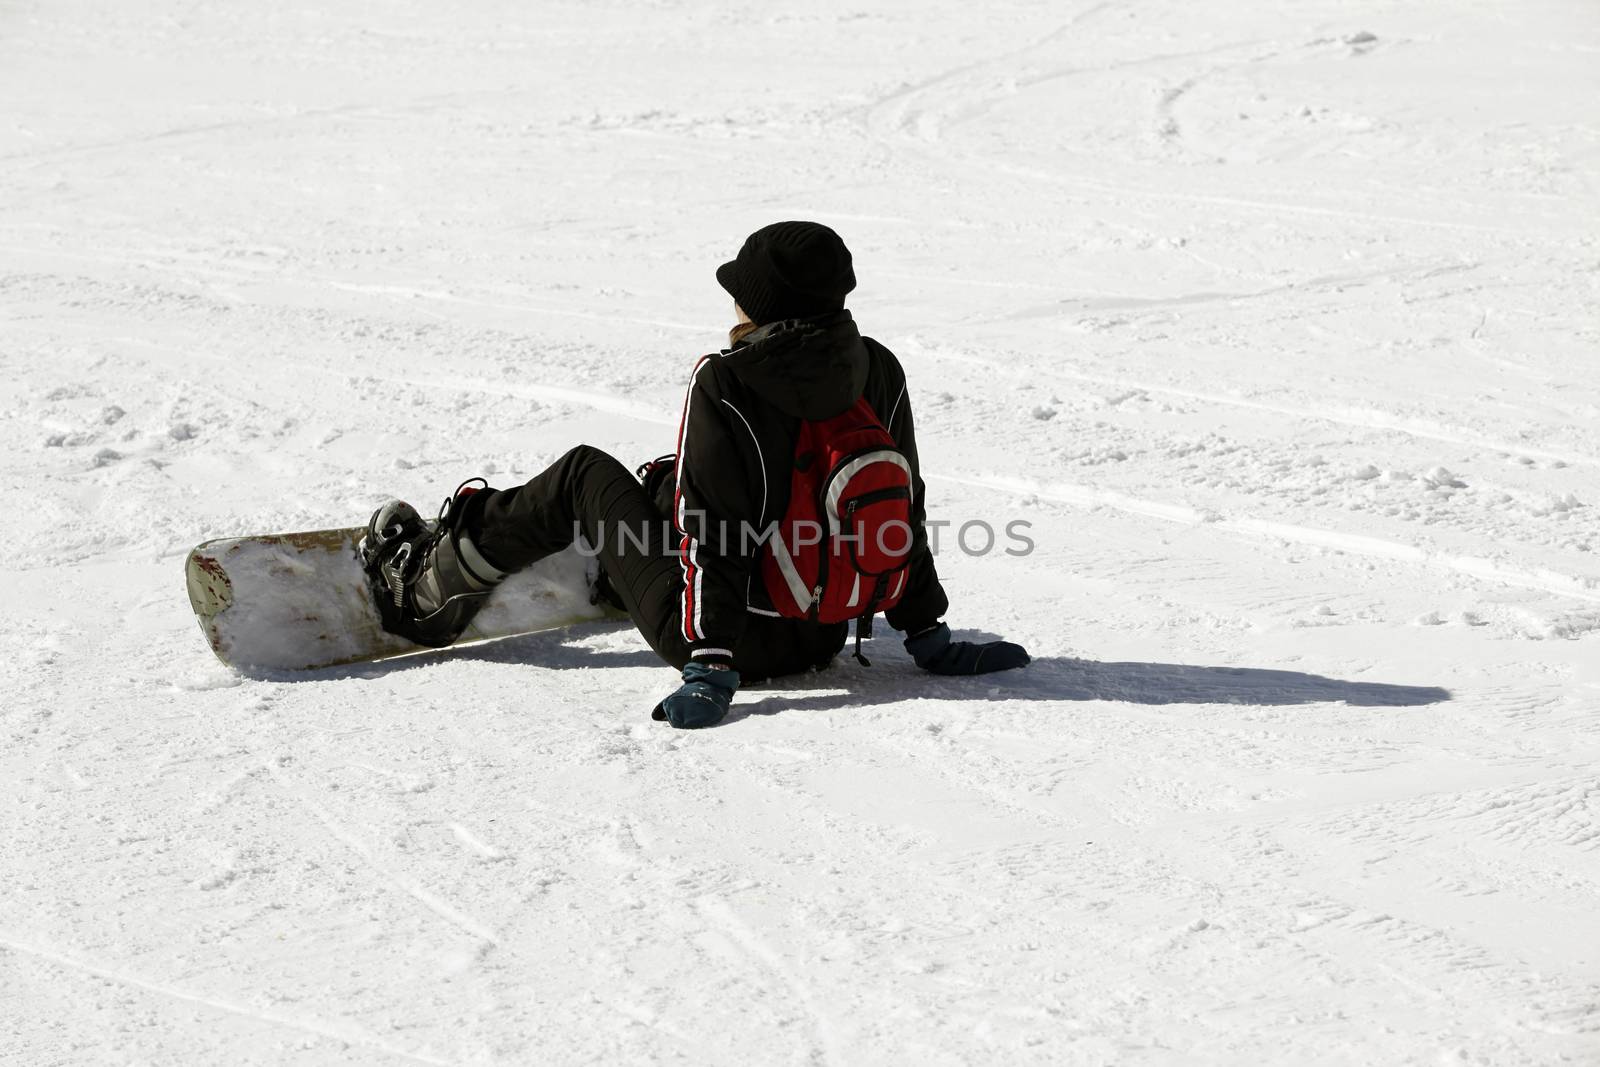 Snowboarder siting on fresh powder snow